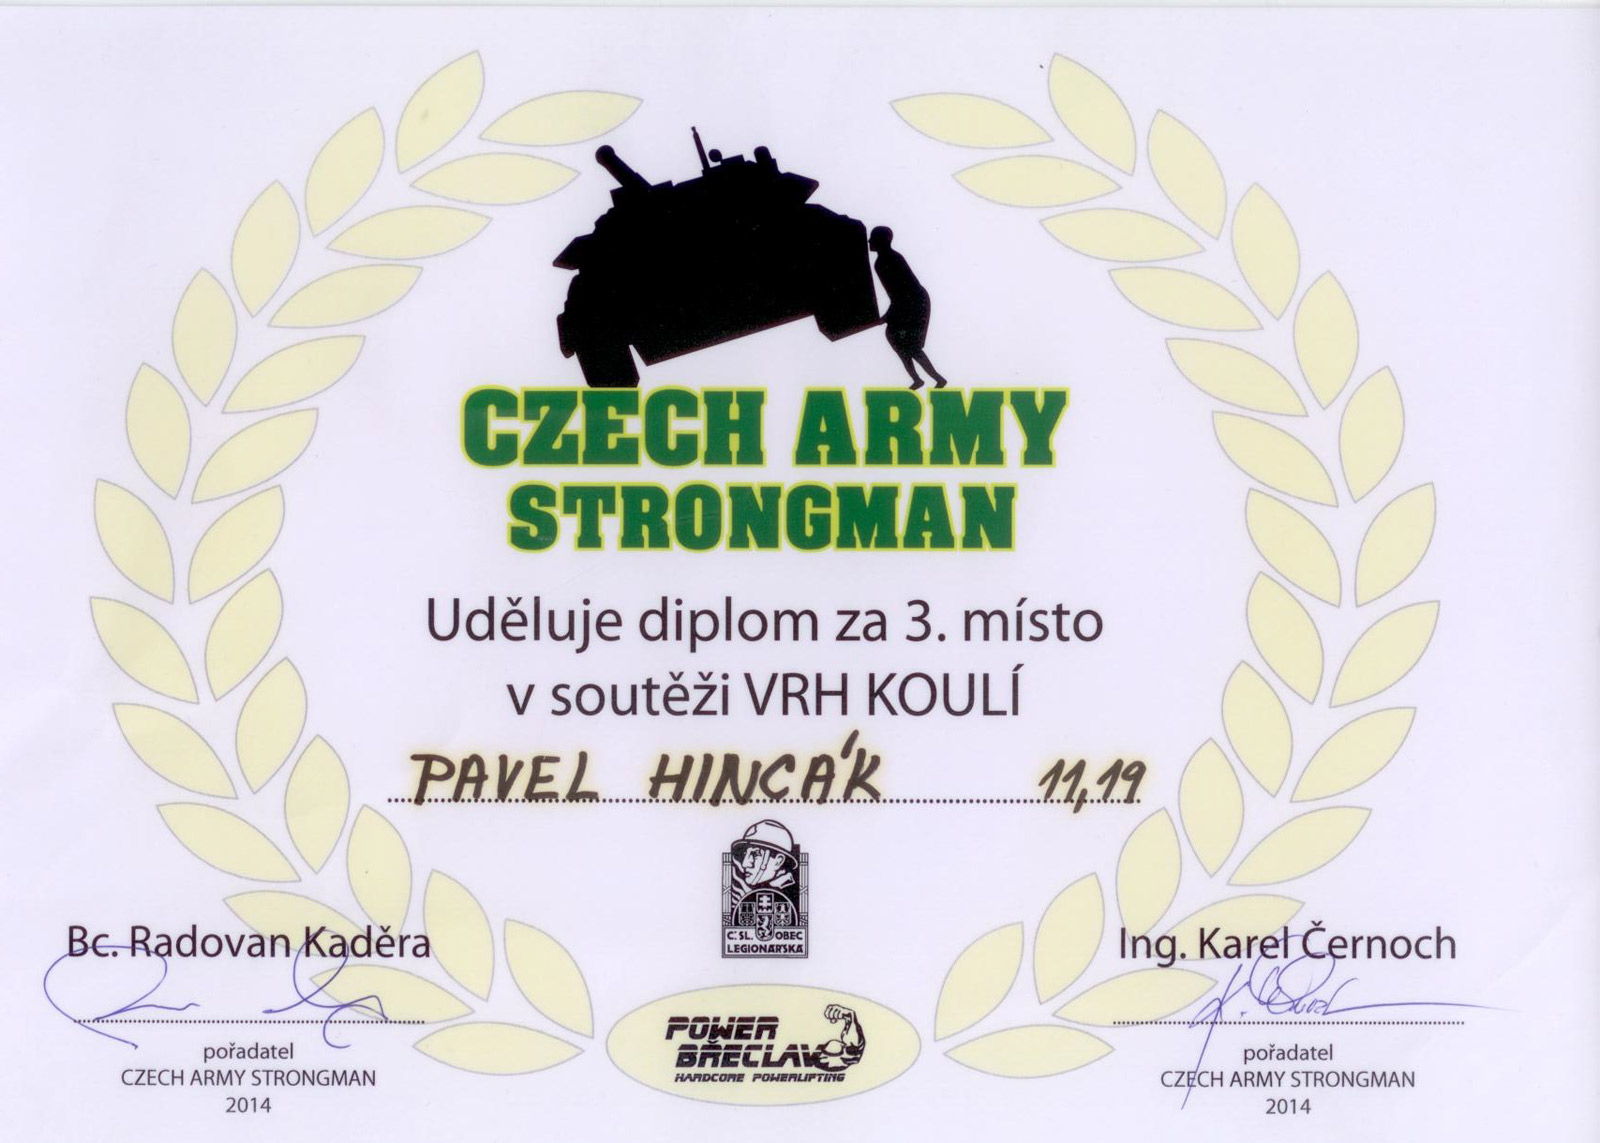 Czech Army Strongman - Vrh koulí 2014